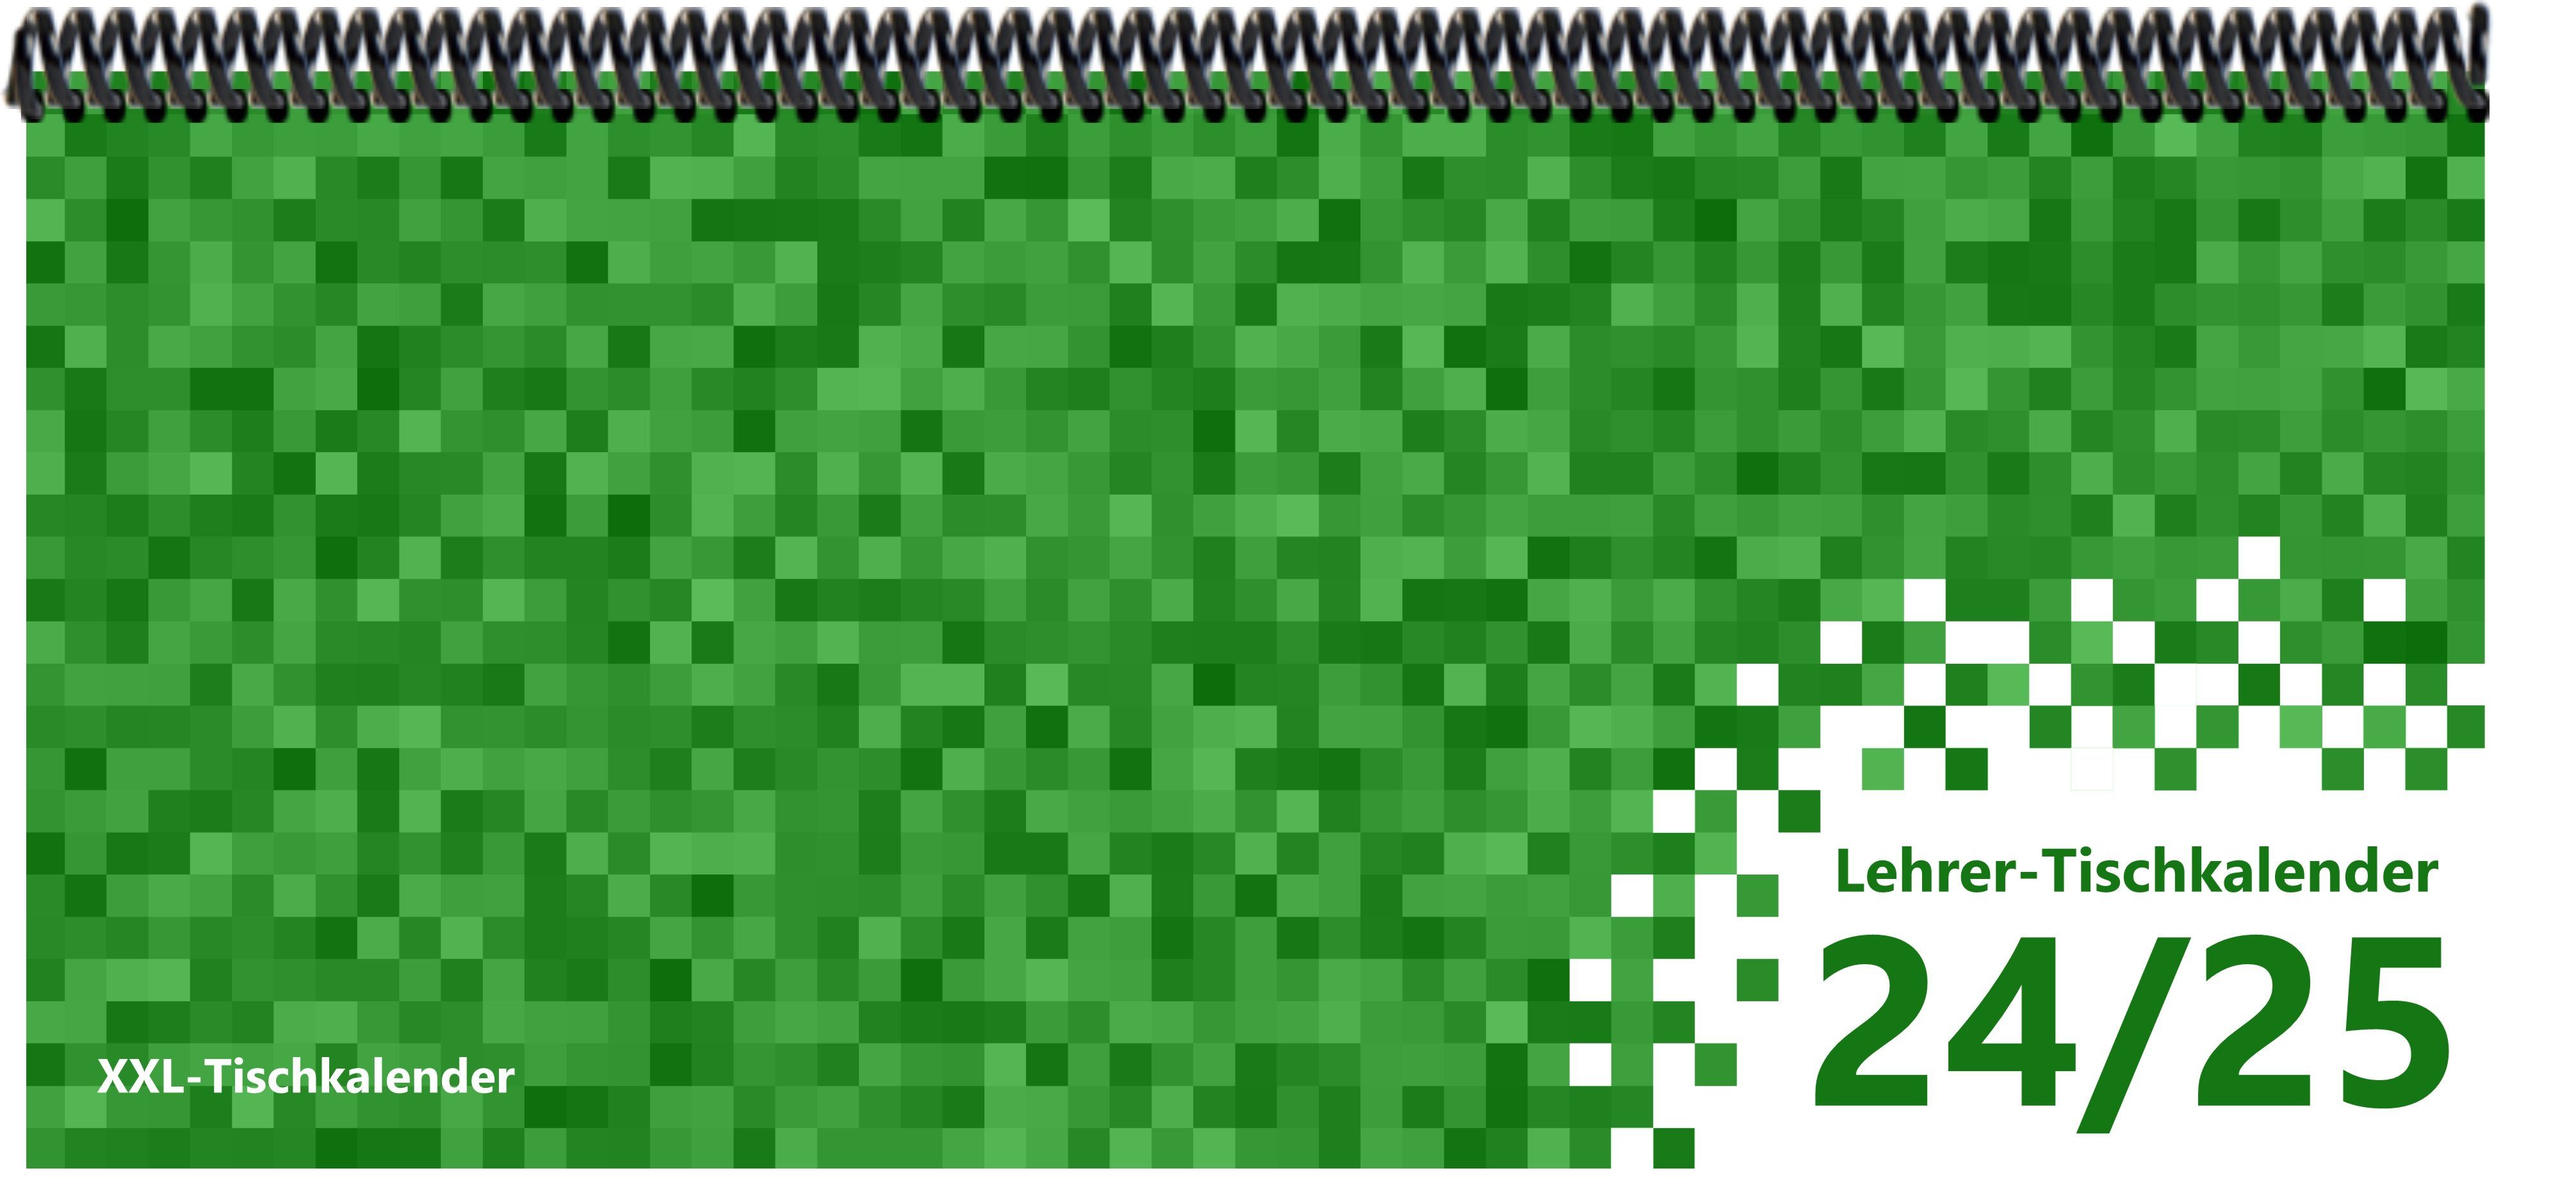 E&Z Verlag Gmbh Tischkalender Lehrer-Tischkalender 2024/2025 Pixel grün